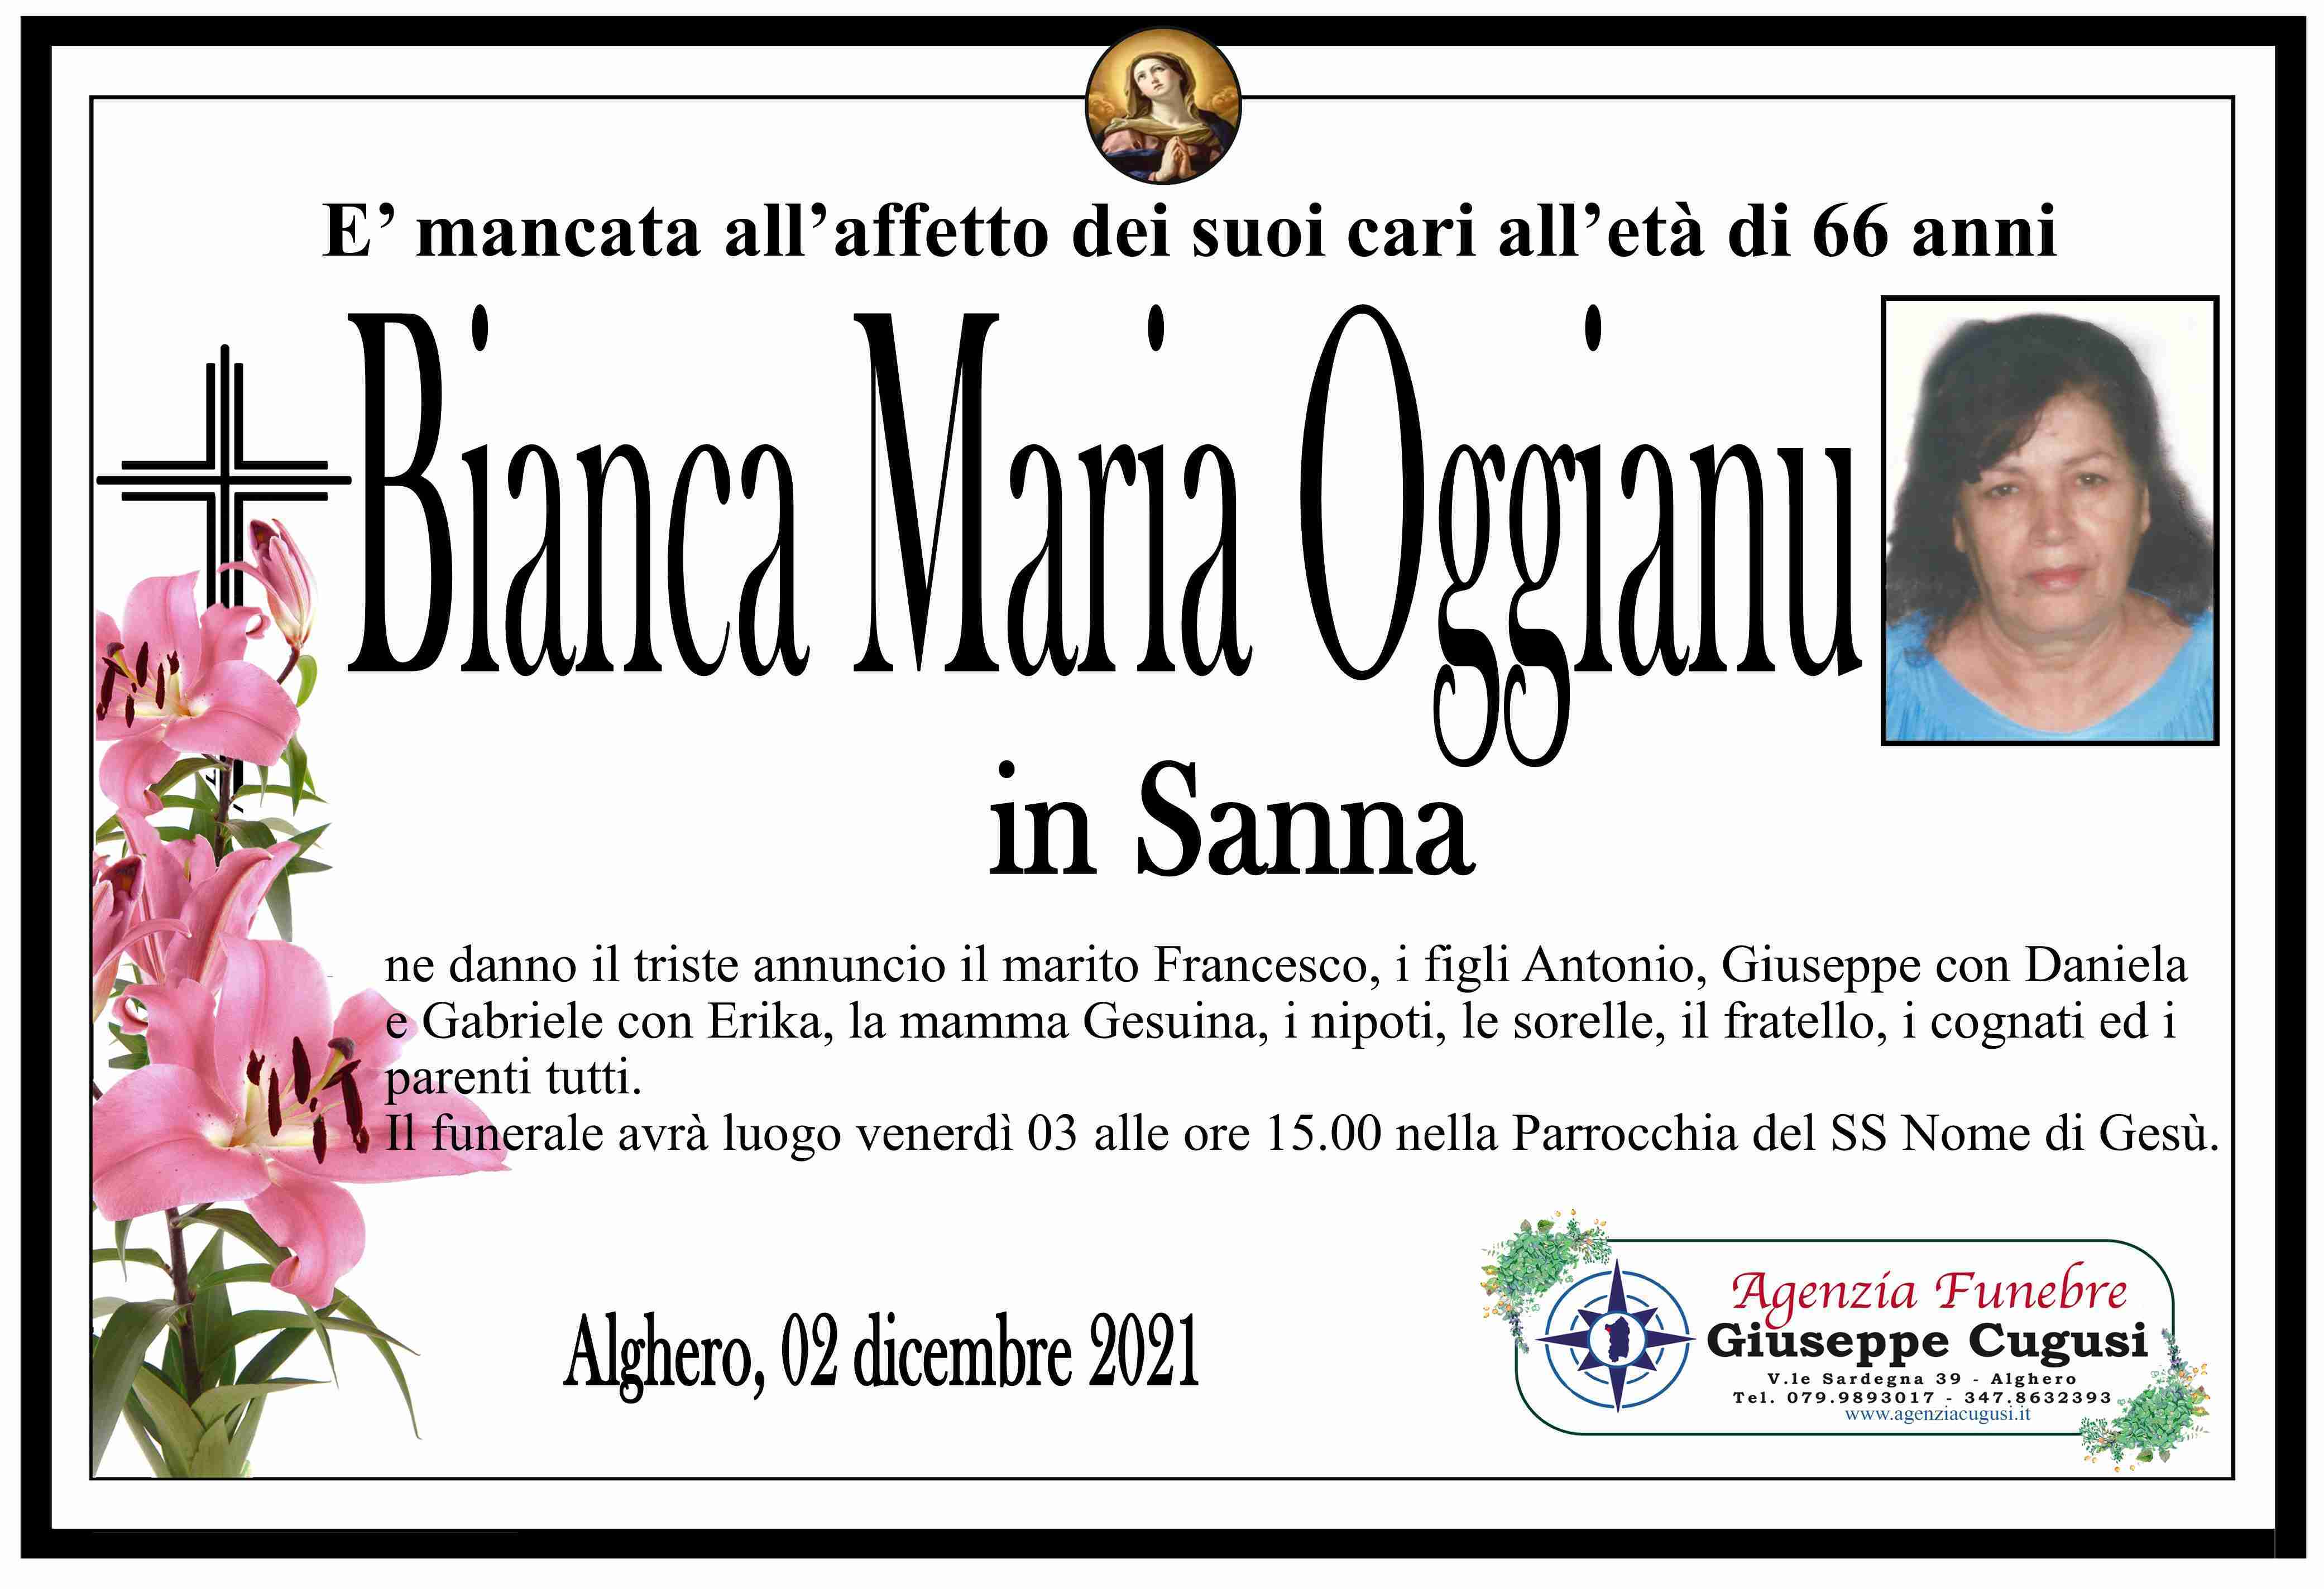 Bianca Maria Oggianu